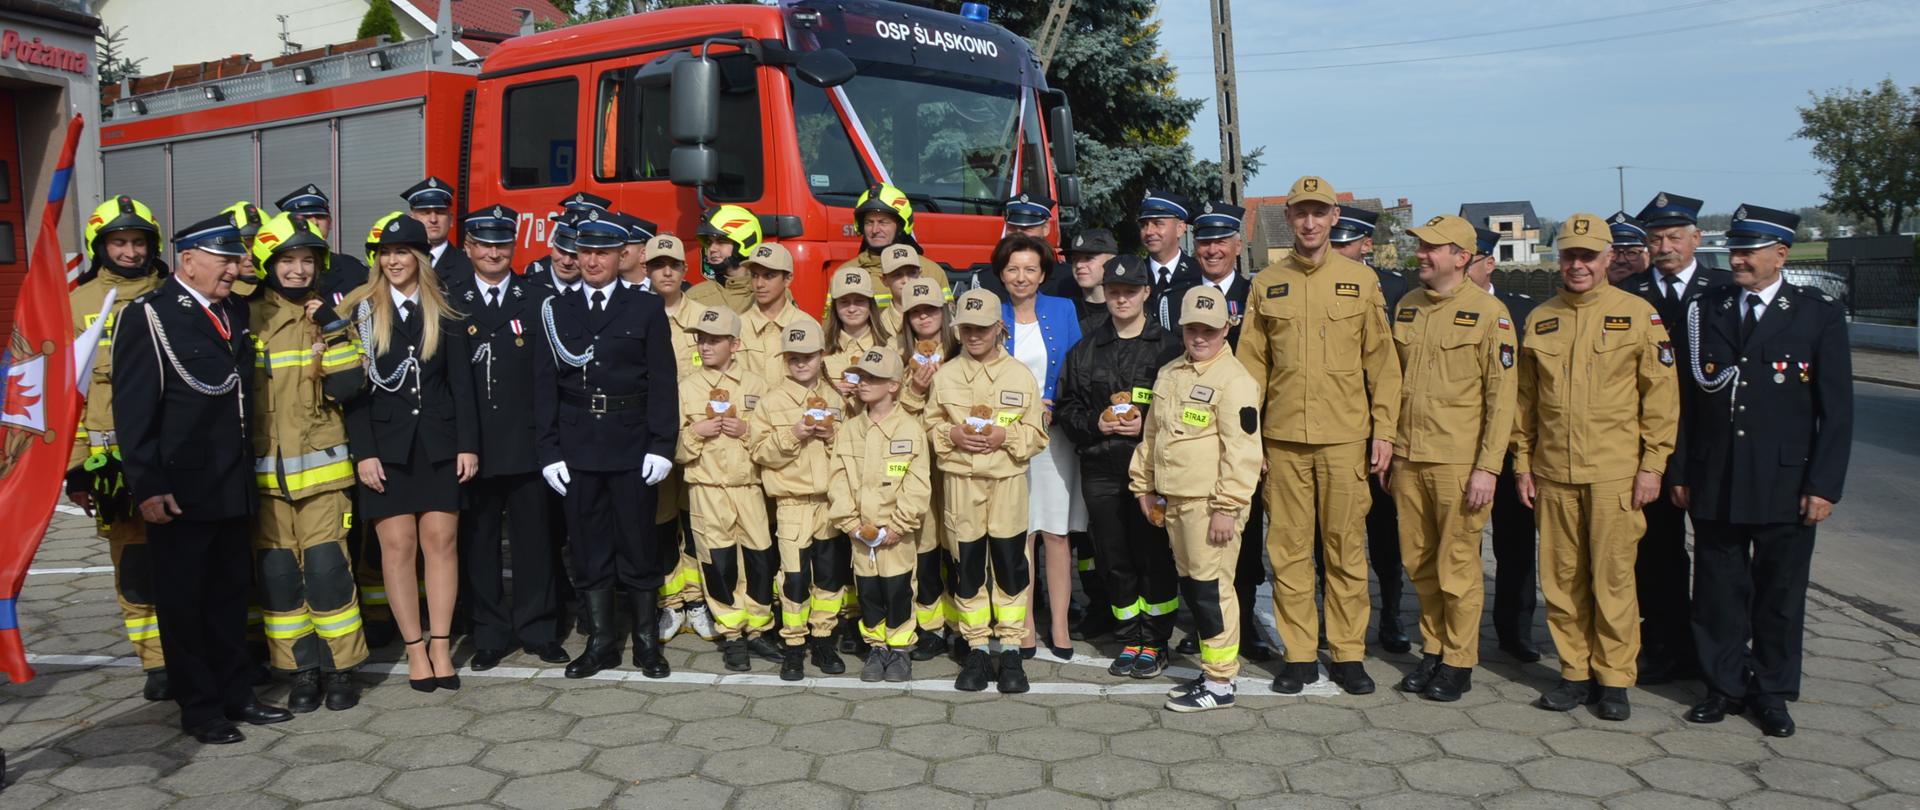 Przekazanie pojazdu ratowniczo-gaśniczego do OSP Śląskowo. Zdjęcie przedstawia plac przed remizą OSP w Śląskowie. Na tle przekazanego pojazdu, do wspólnego zdjęcia pozują uczestnicy uroczystości: pani minister, strażacy OSP i PSP oraz członkowie młodzieżowej drużyny pożarniczej. 